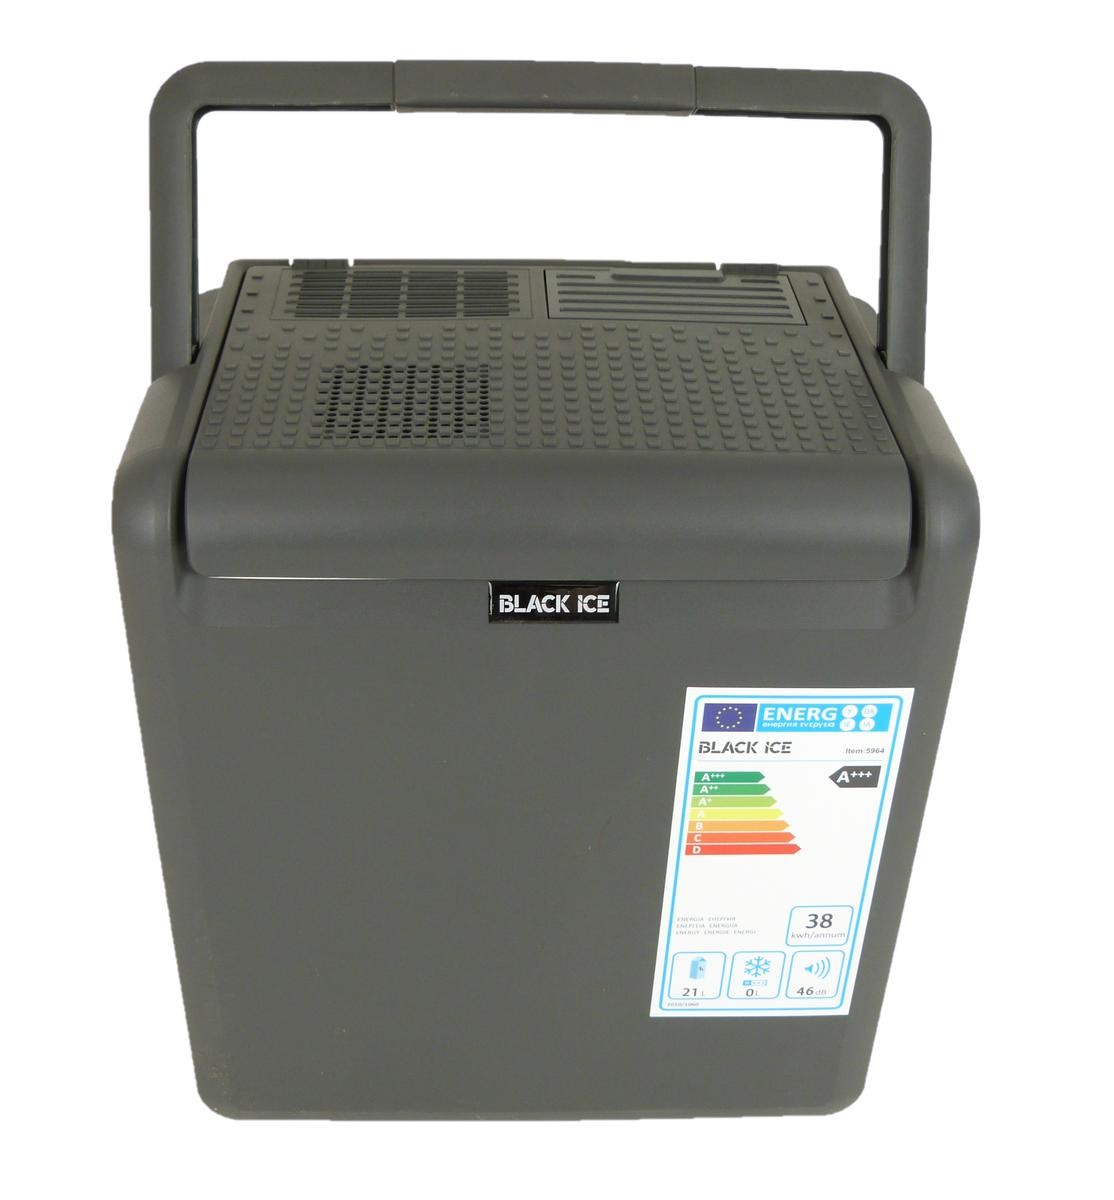 5964 BLACK ICE Frigo portatile 12V 220V, A+++, 30l, termoelettrico,  portatile ▷ AUTODOC prezzo e recensioni